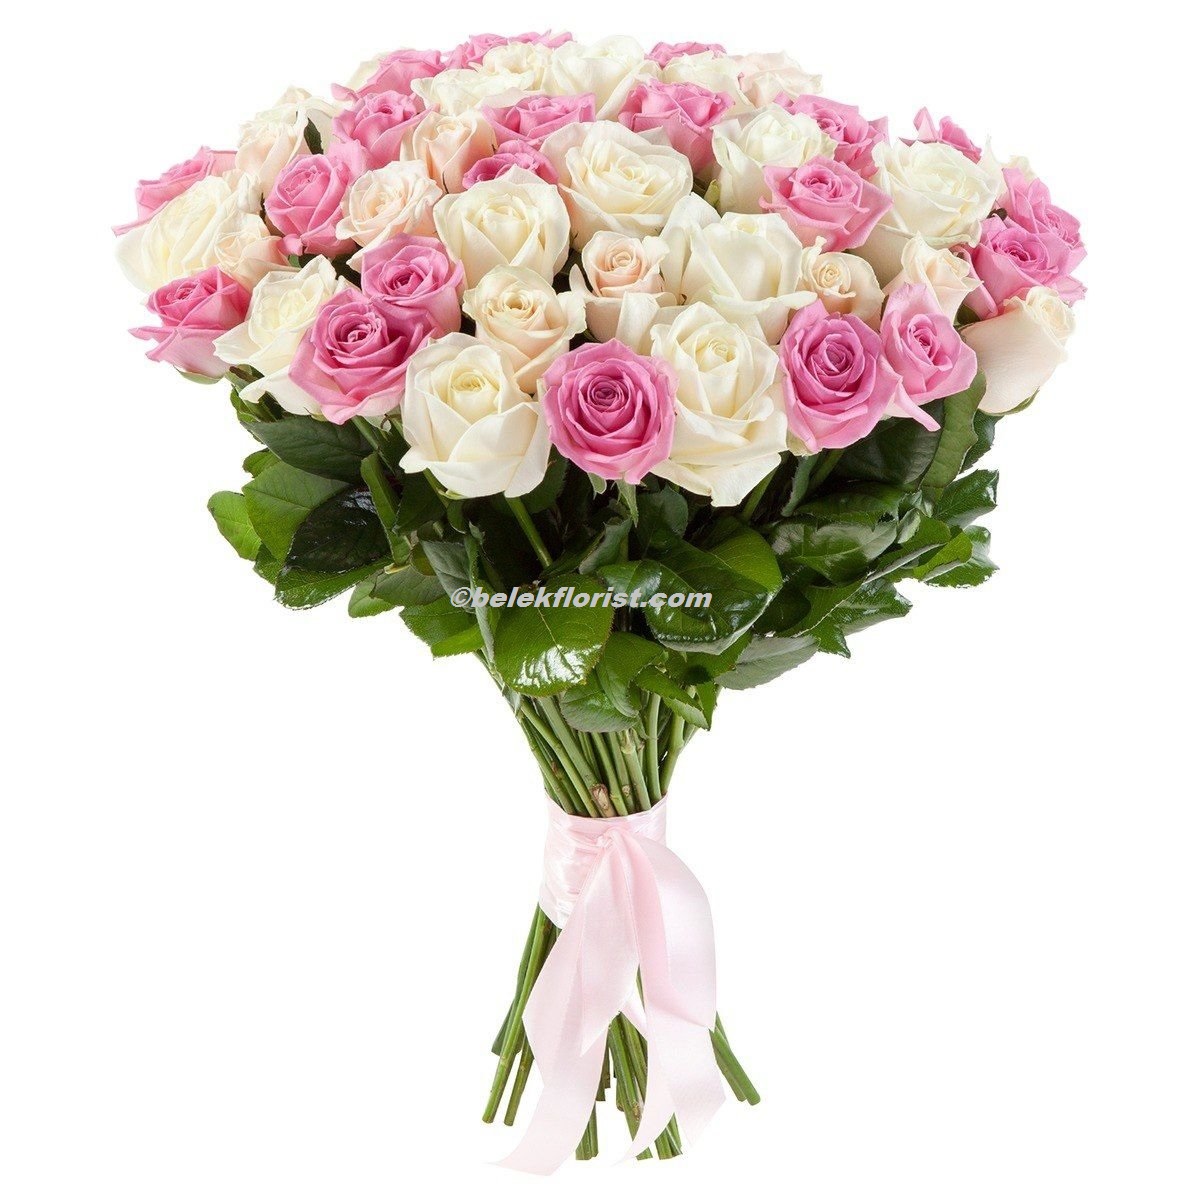  Belek Flower Delivery 51 pcs. Pink white rose